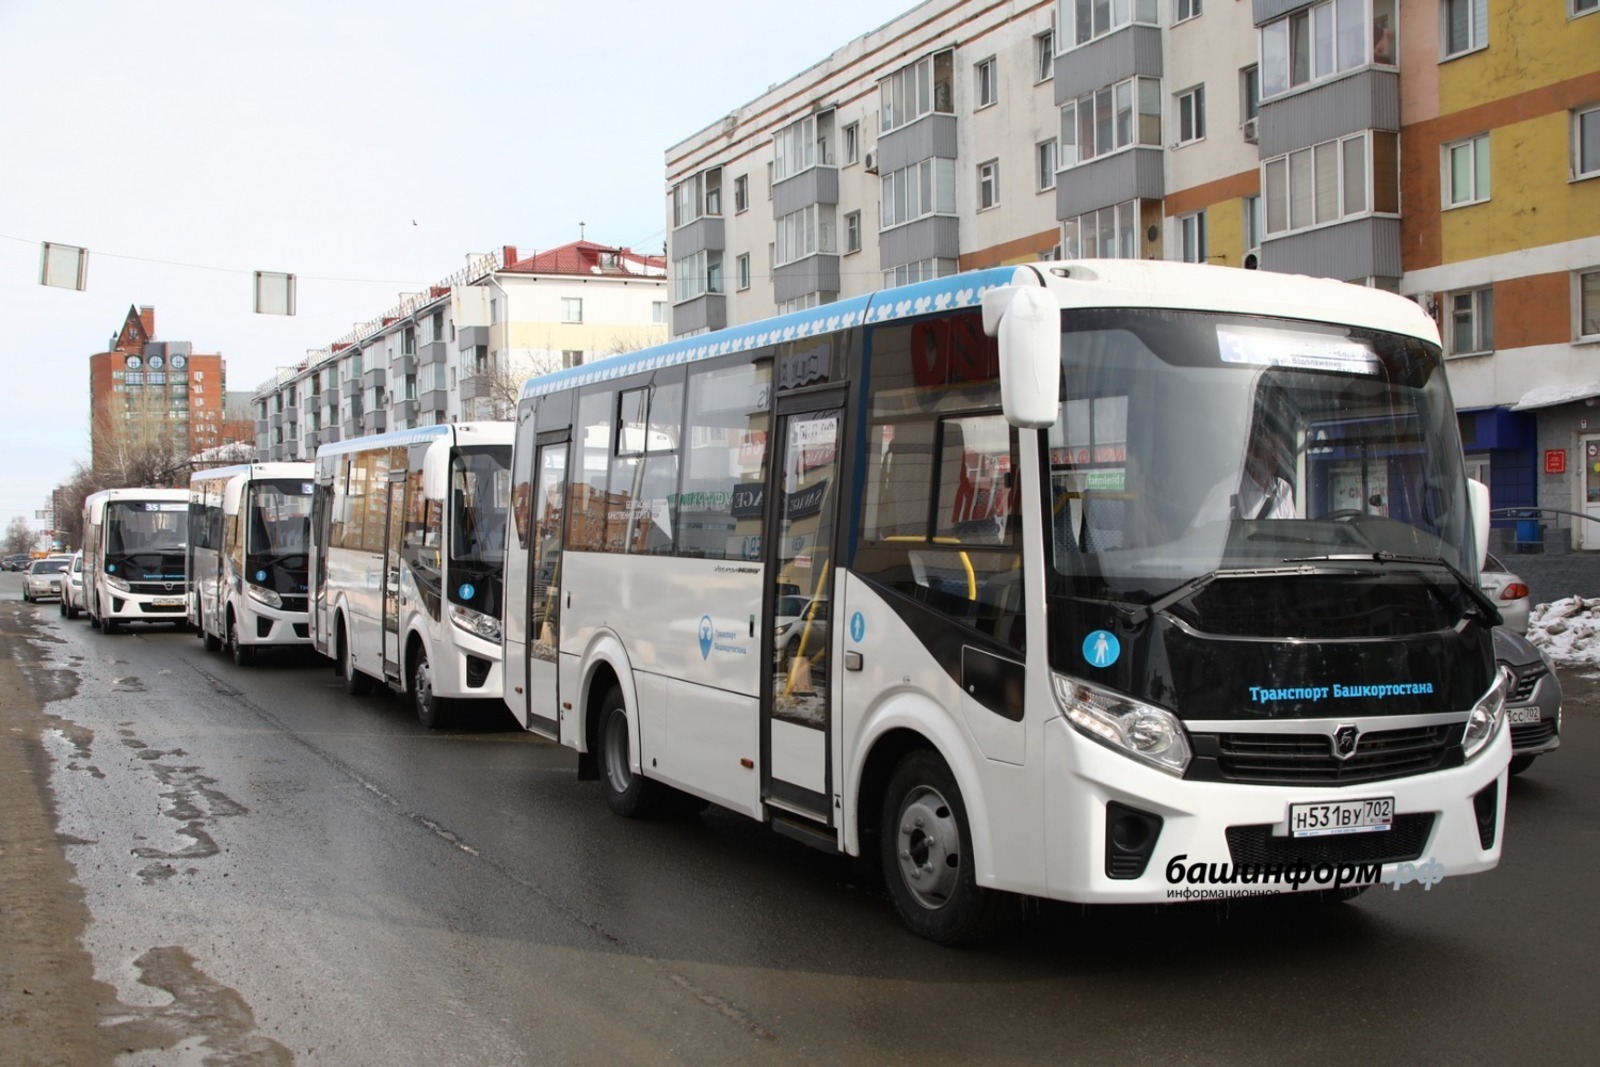 159 новых автобусов выйдут на линии  в Башкирии